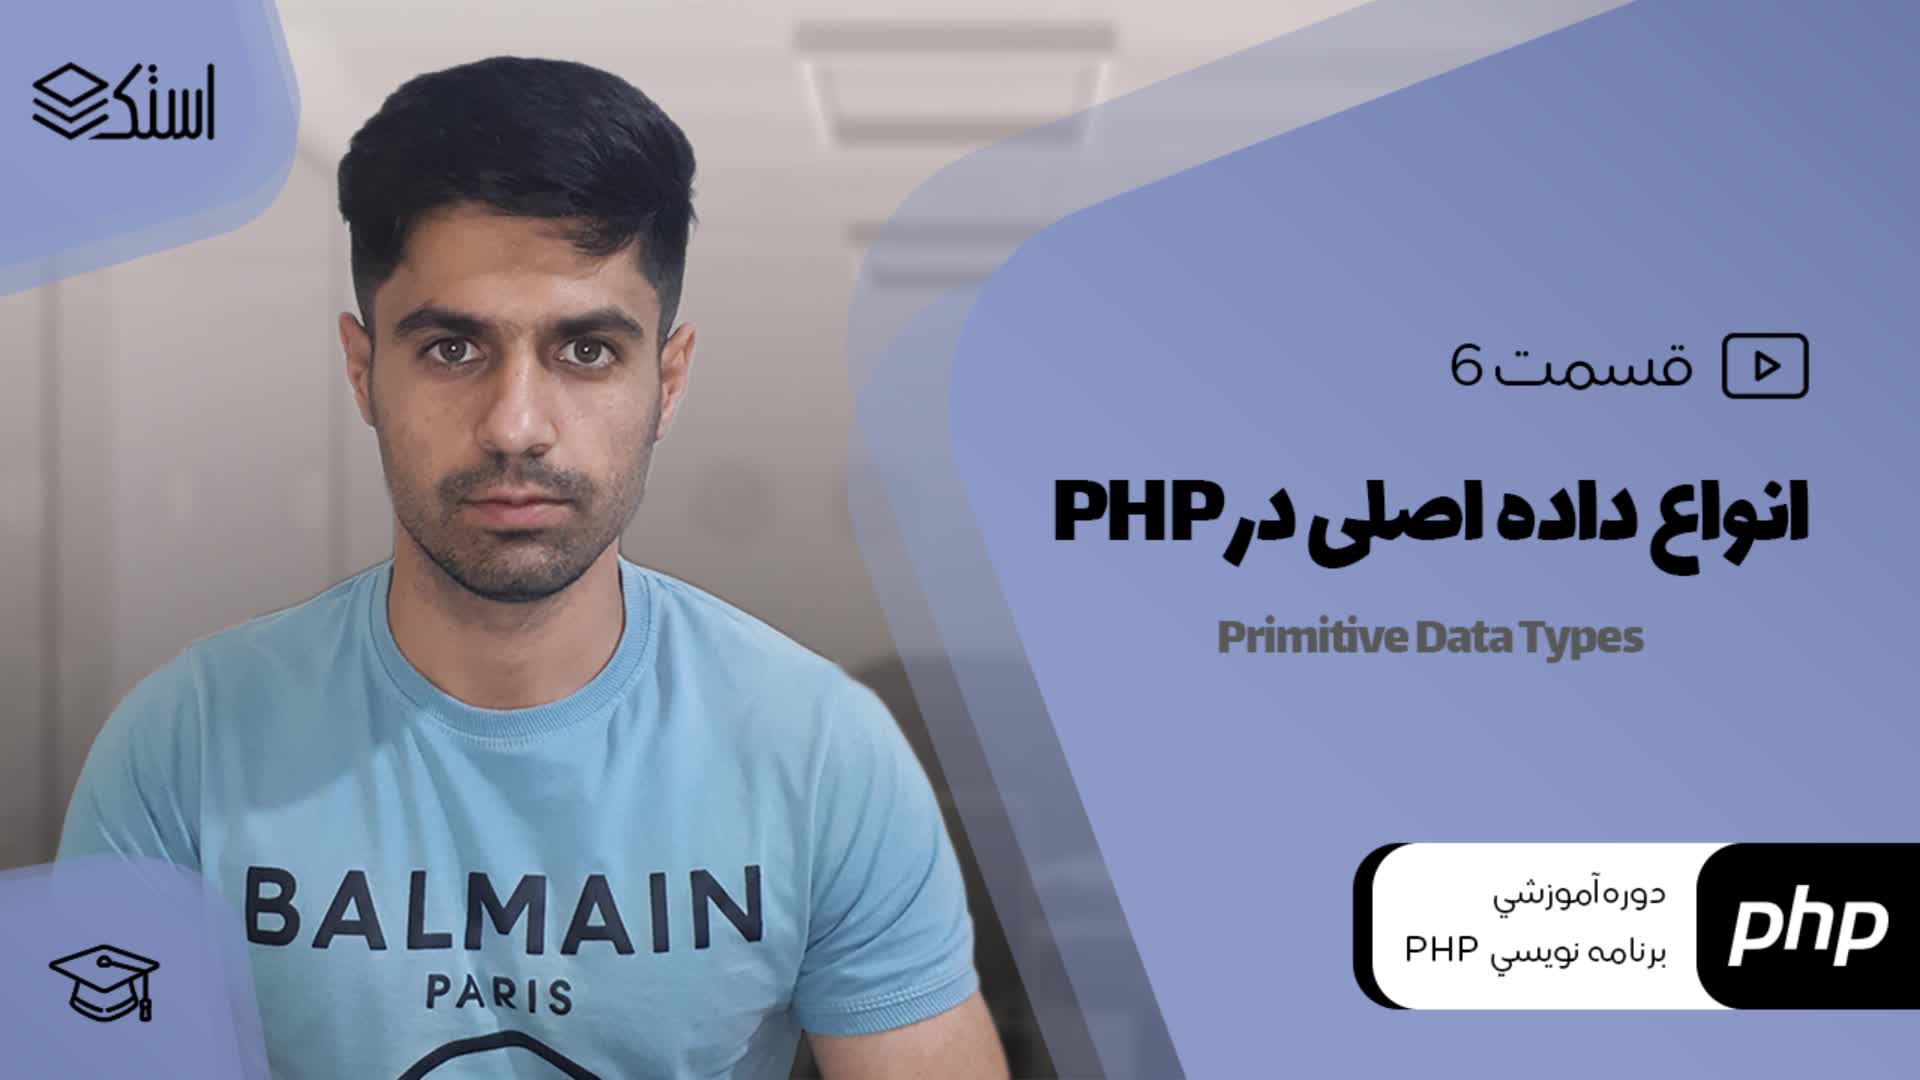 آموزش انواع داده ابتدائی (Primitive Data Types) در PHP (ویدیو + توضیحات) - قسمت 6 - استک لرن